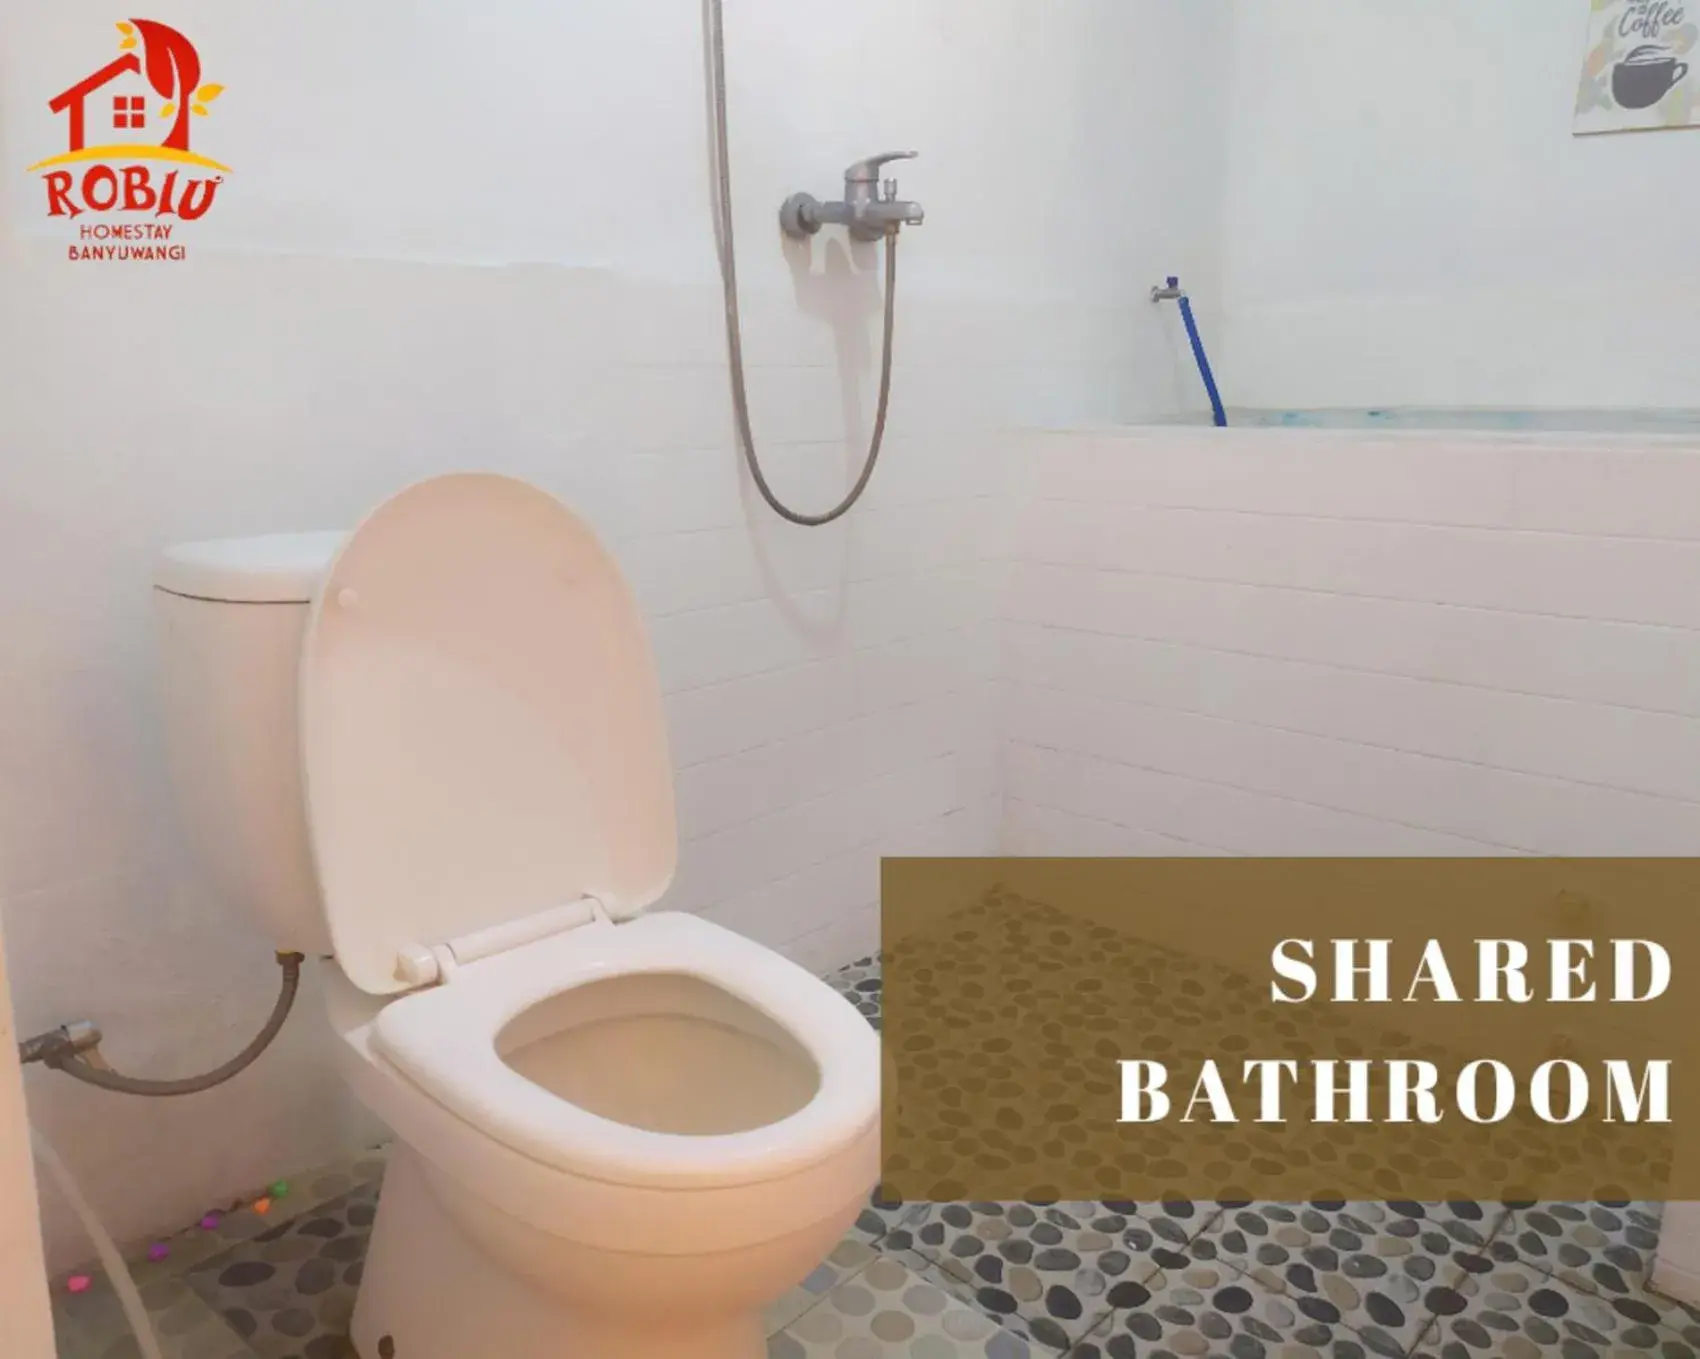 Bathroom in Robiu homestay